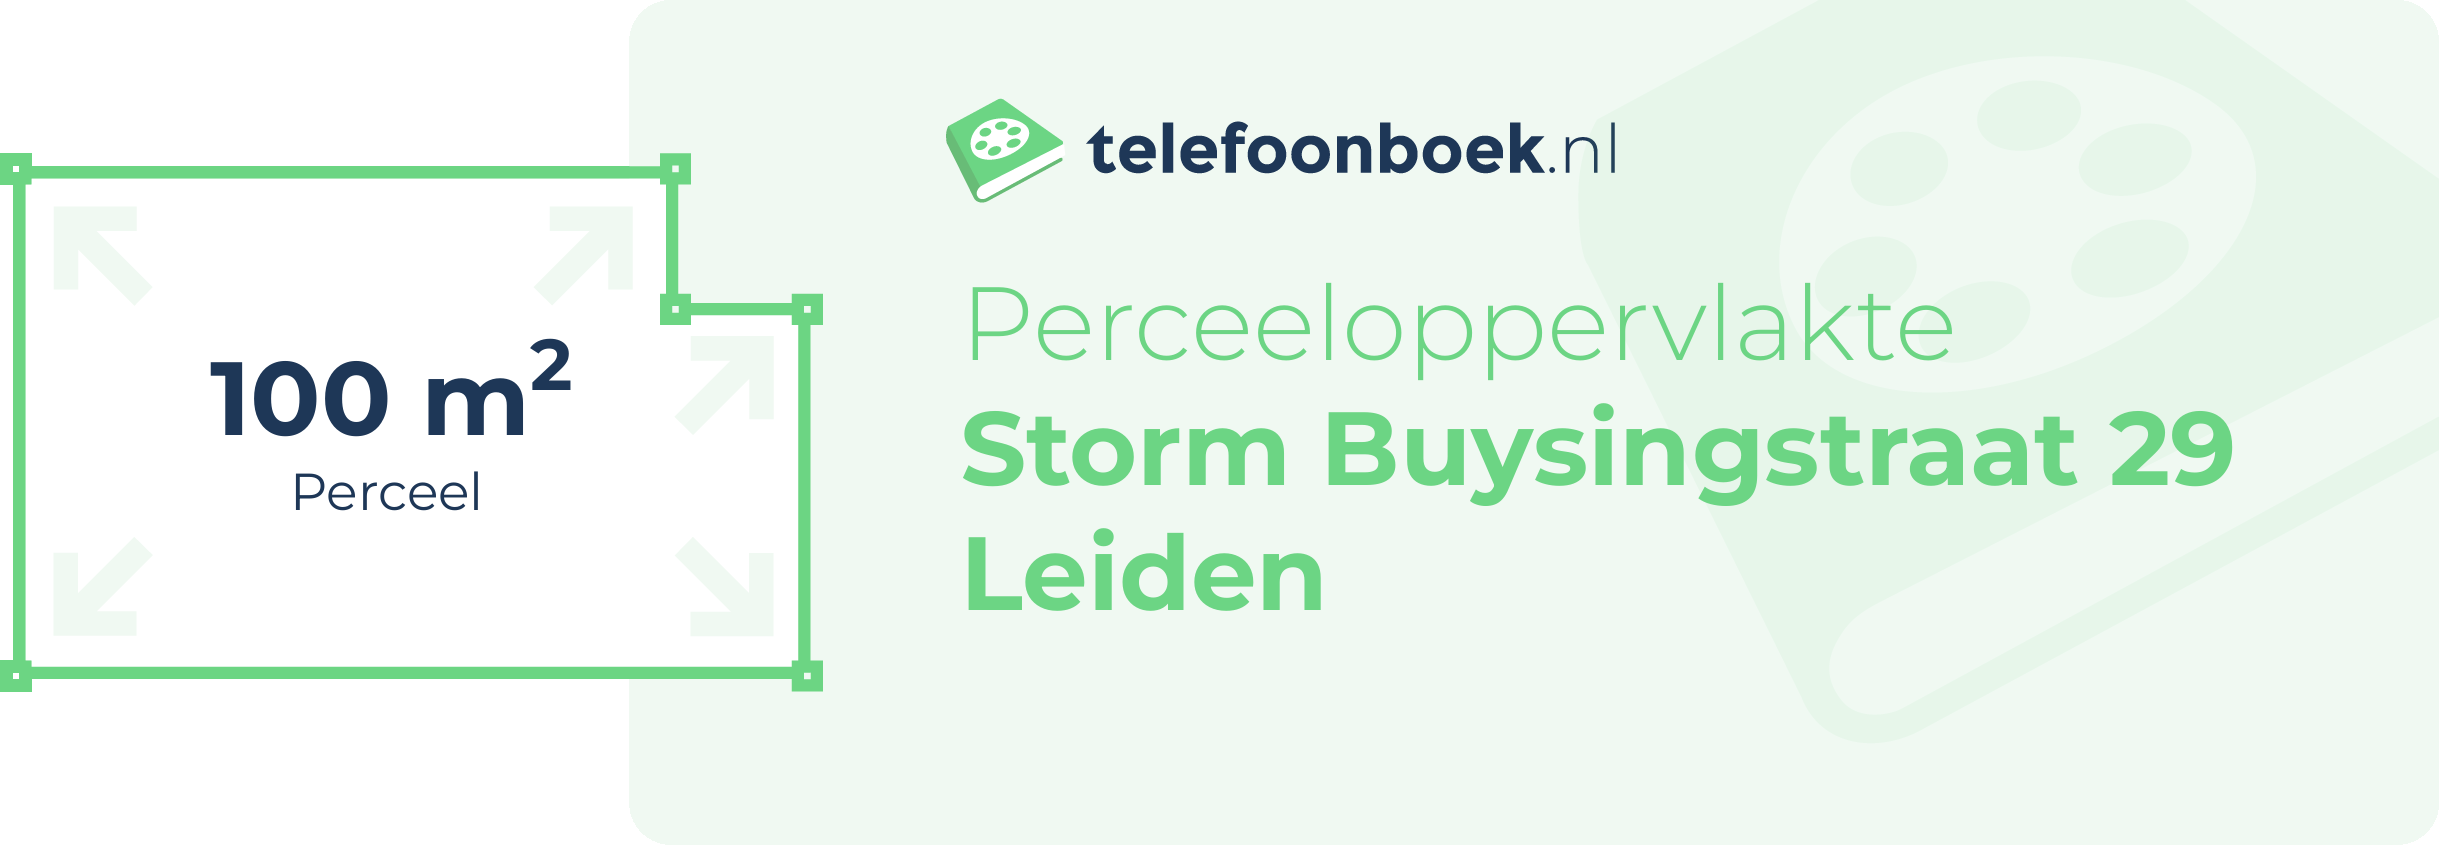 Perceeloppervlakte Storm Buysingstraat 29 Leiden